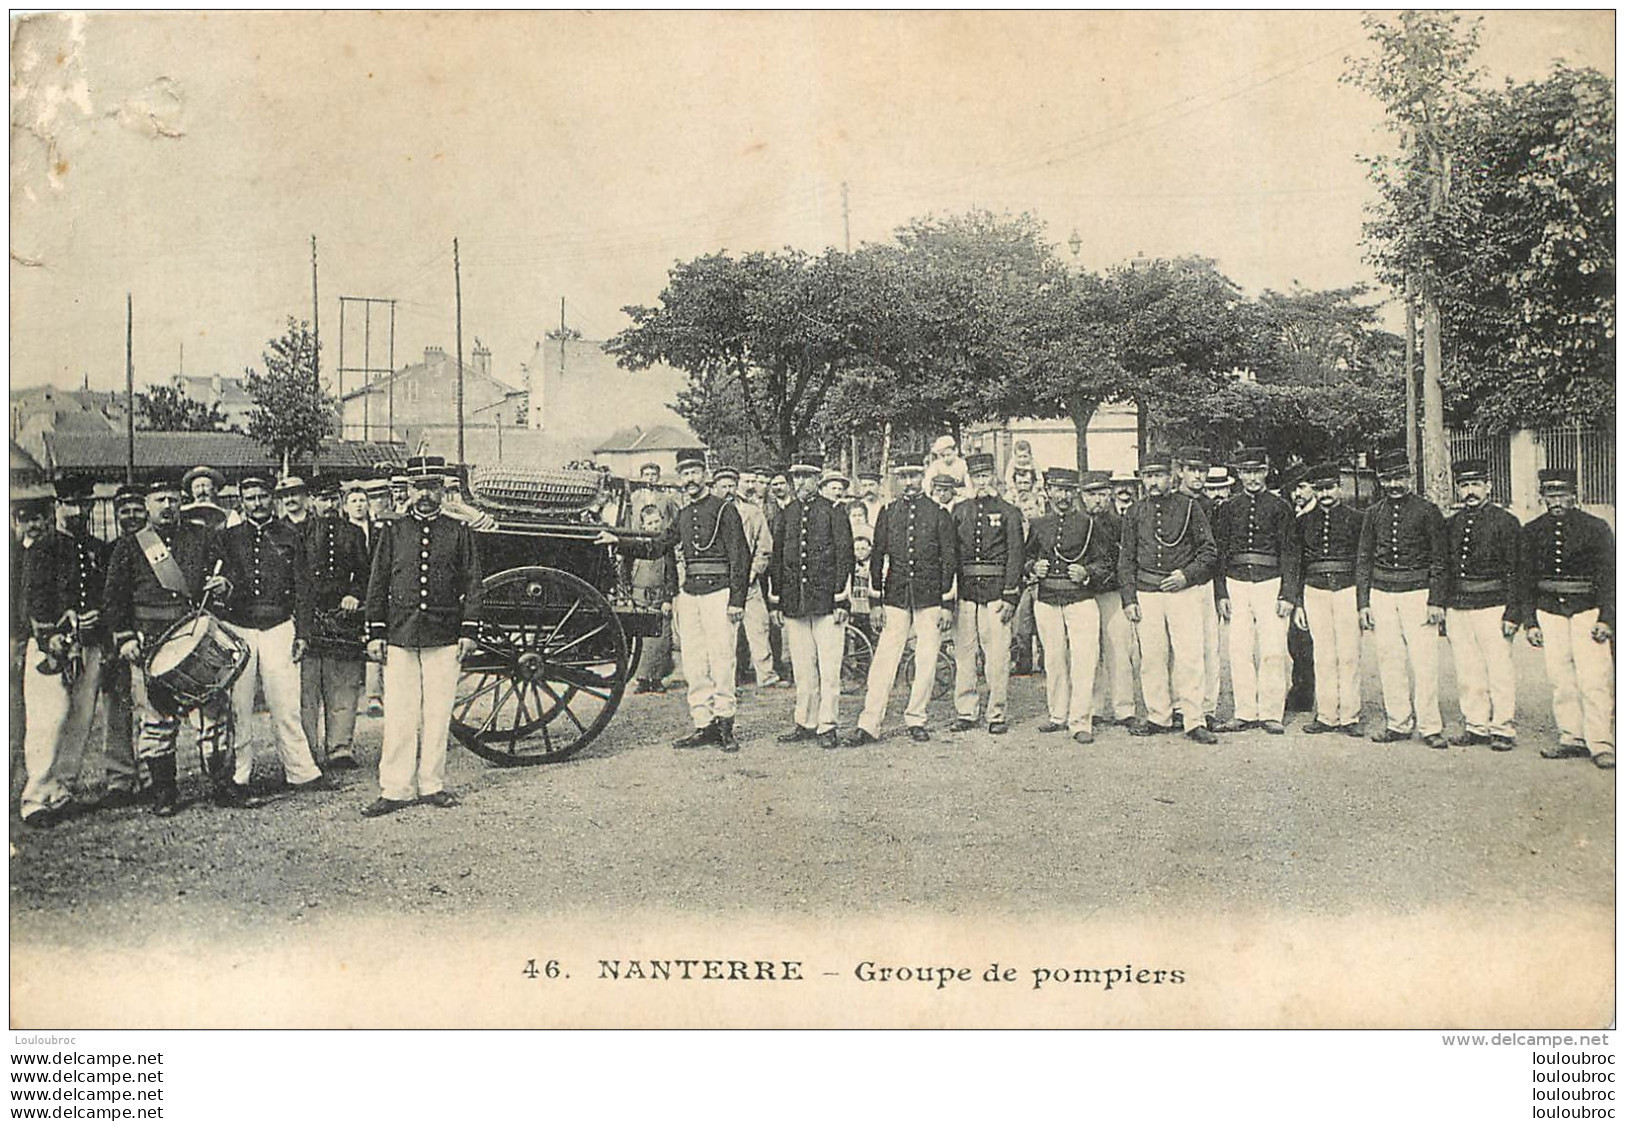 GROUPE DE POMPIERS A NANTERRE - Firemen